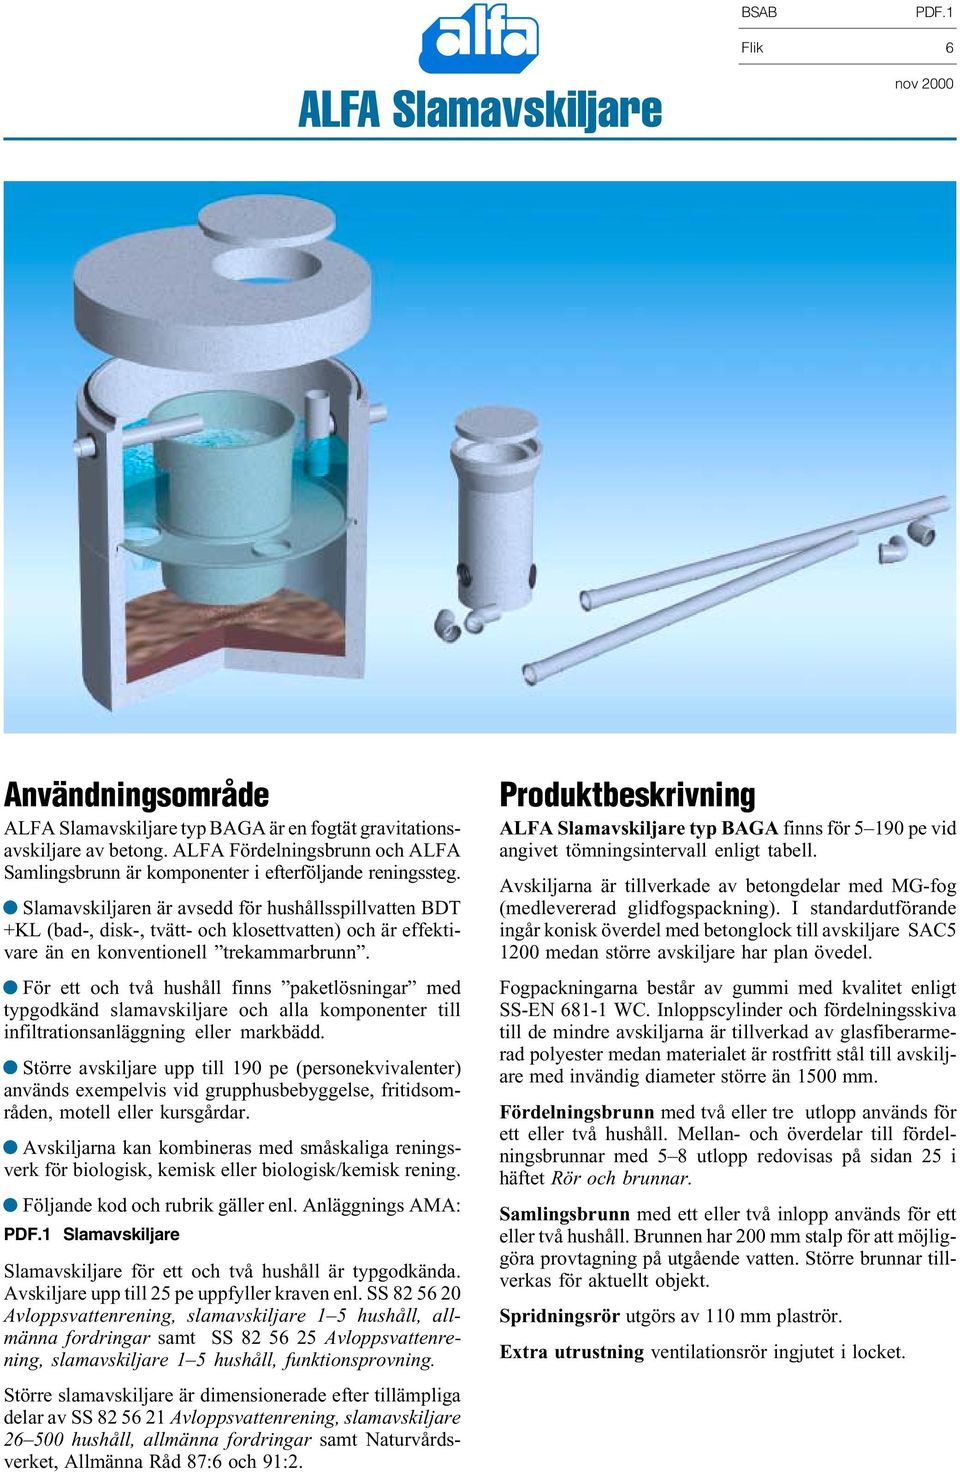 Slamavskiljaren är avse för usållsspillvatten BT +KL (ba-, isk-, tvätt- oc klosettvatten) oc är effektivare än en konventionell trekammarbrunn.